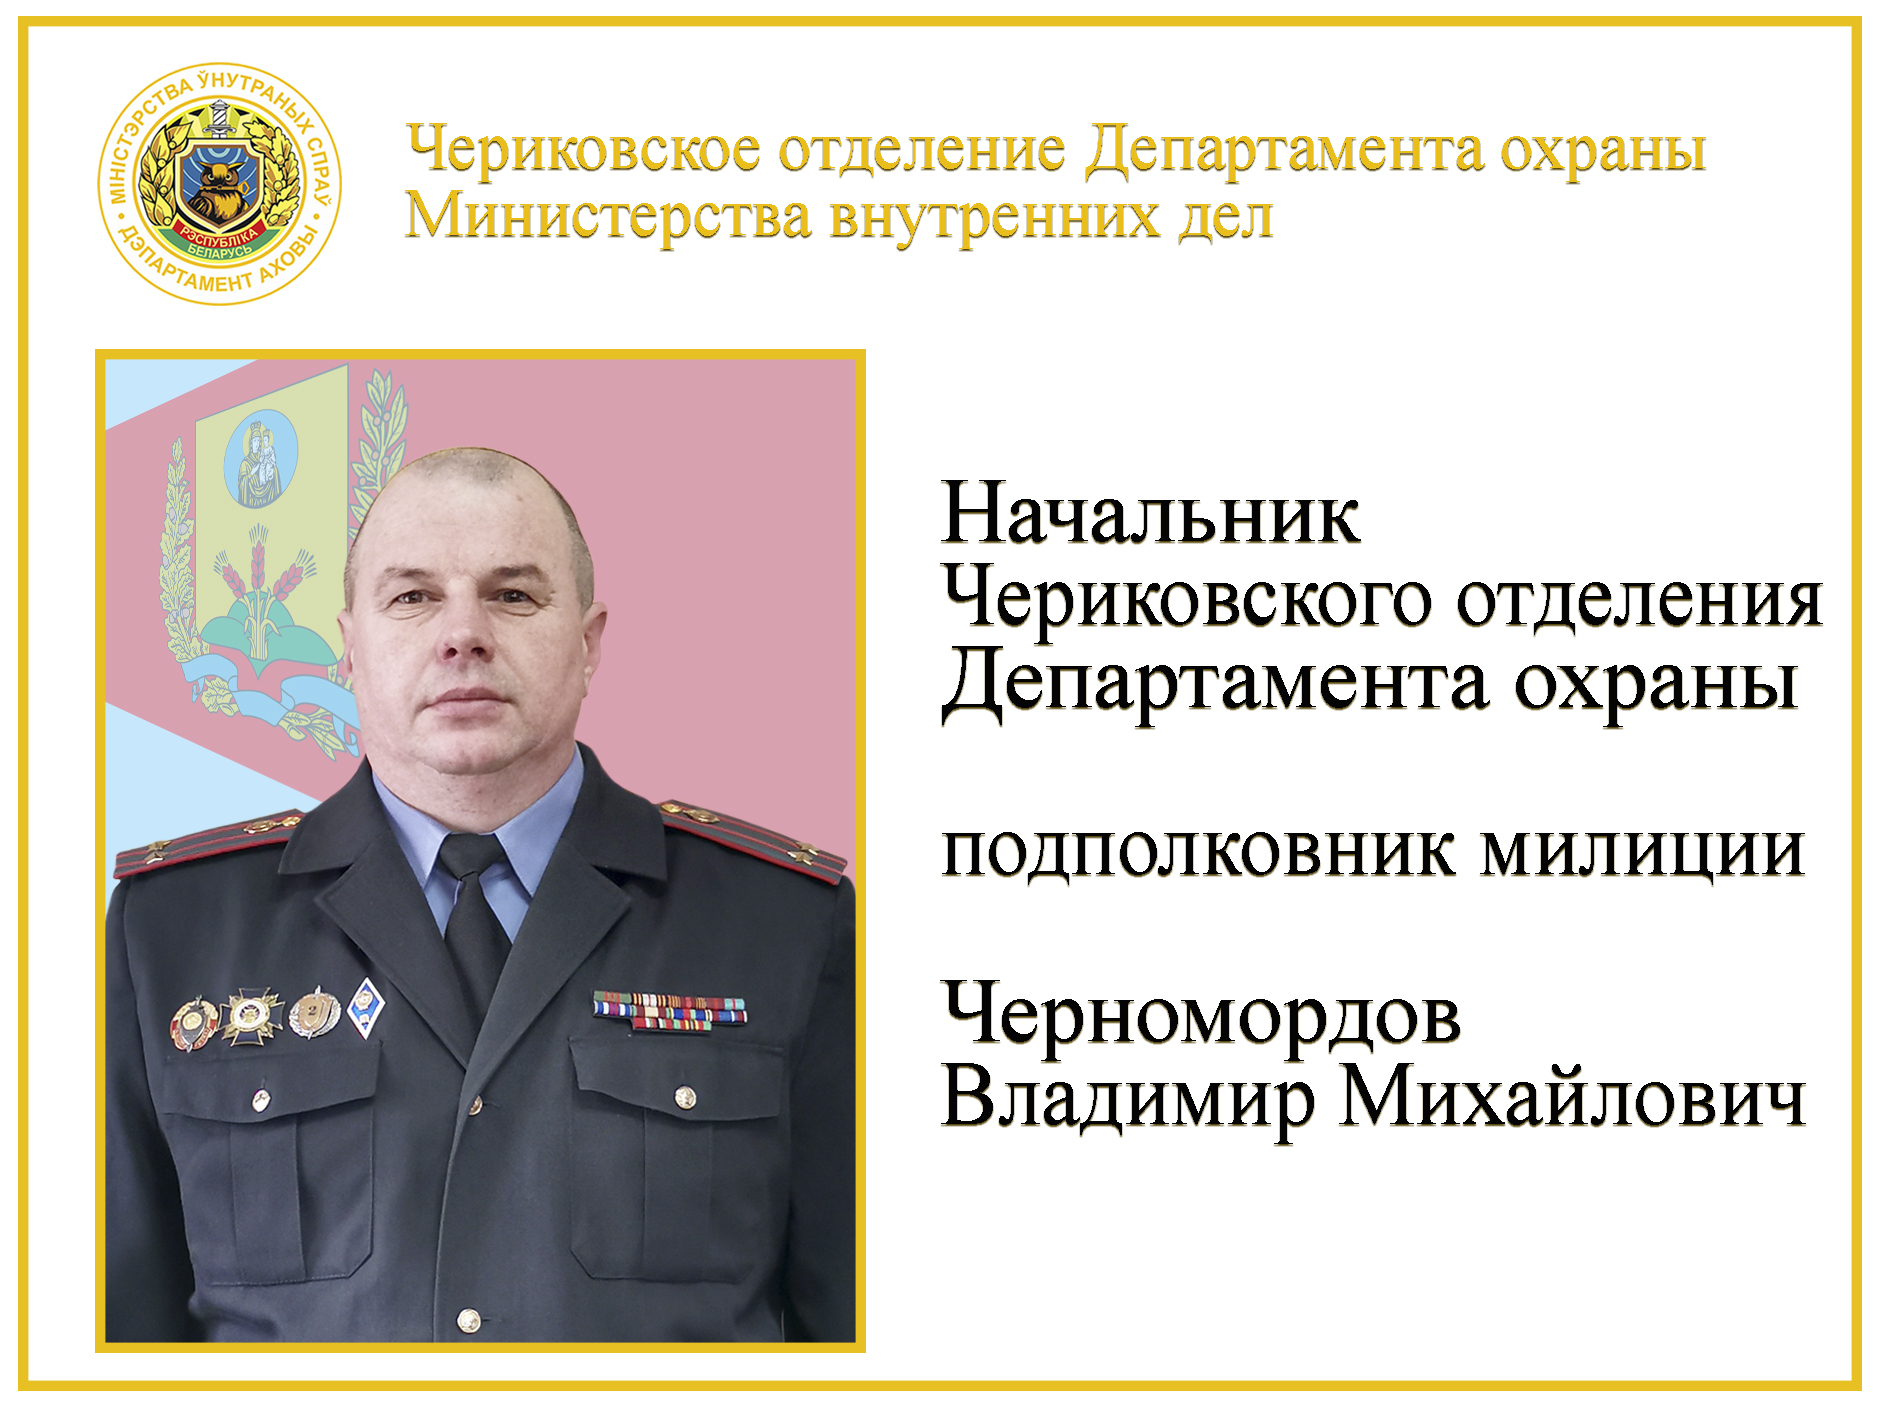 подполковник милиции Черномордов В.М